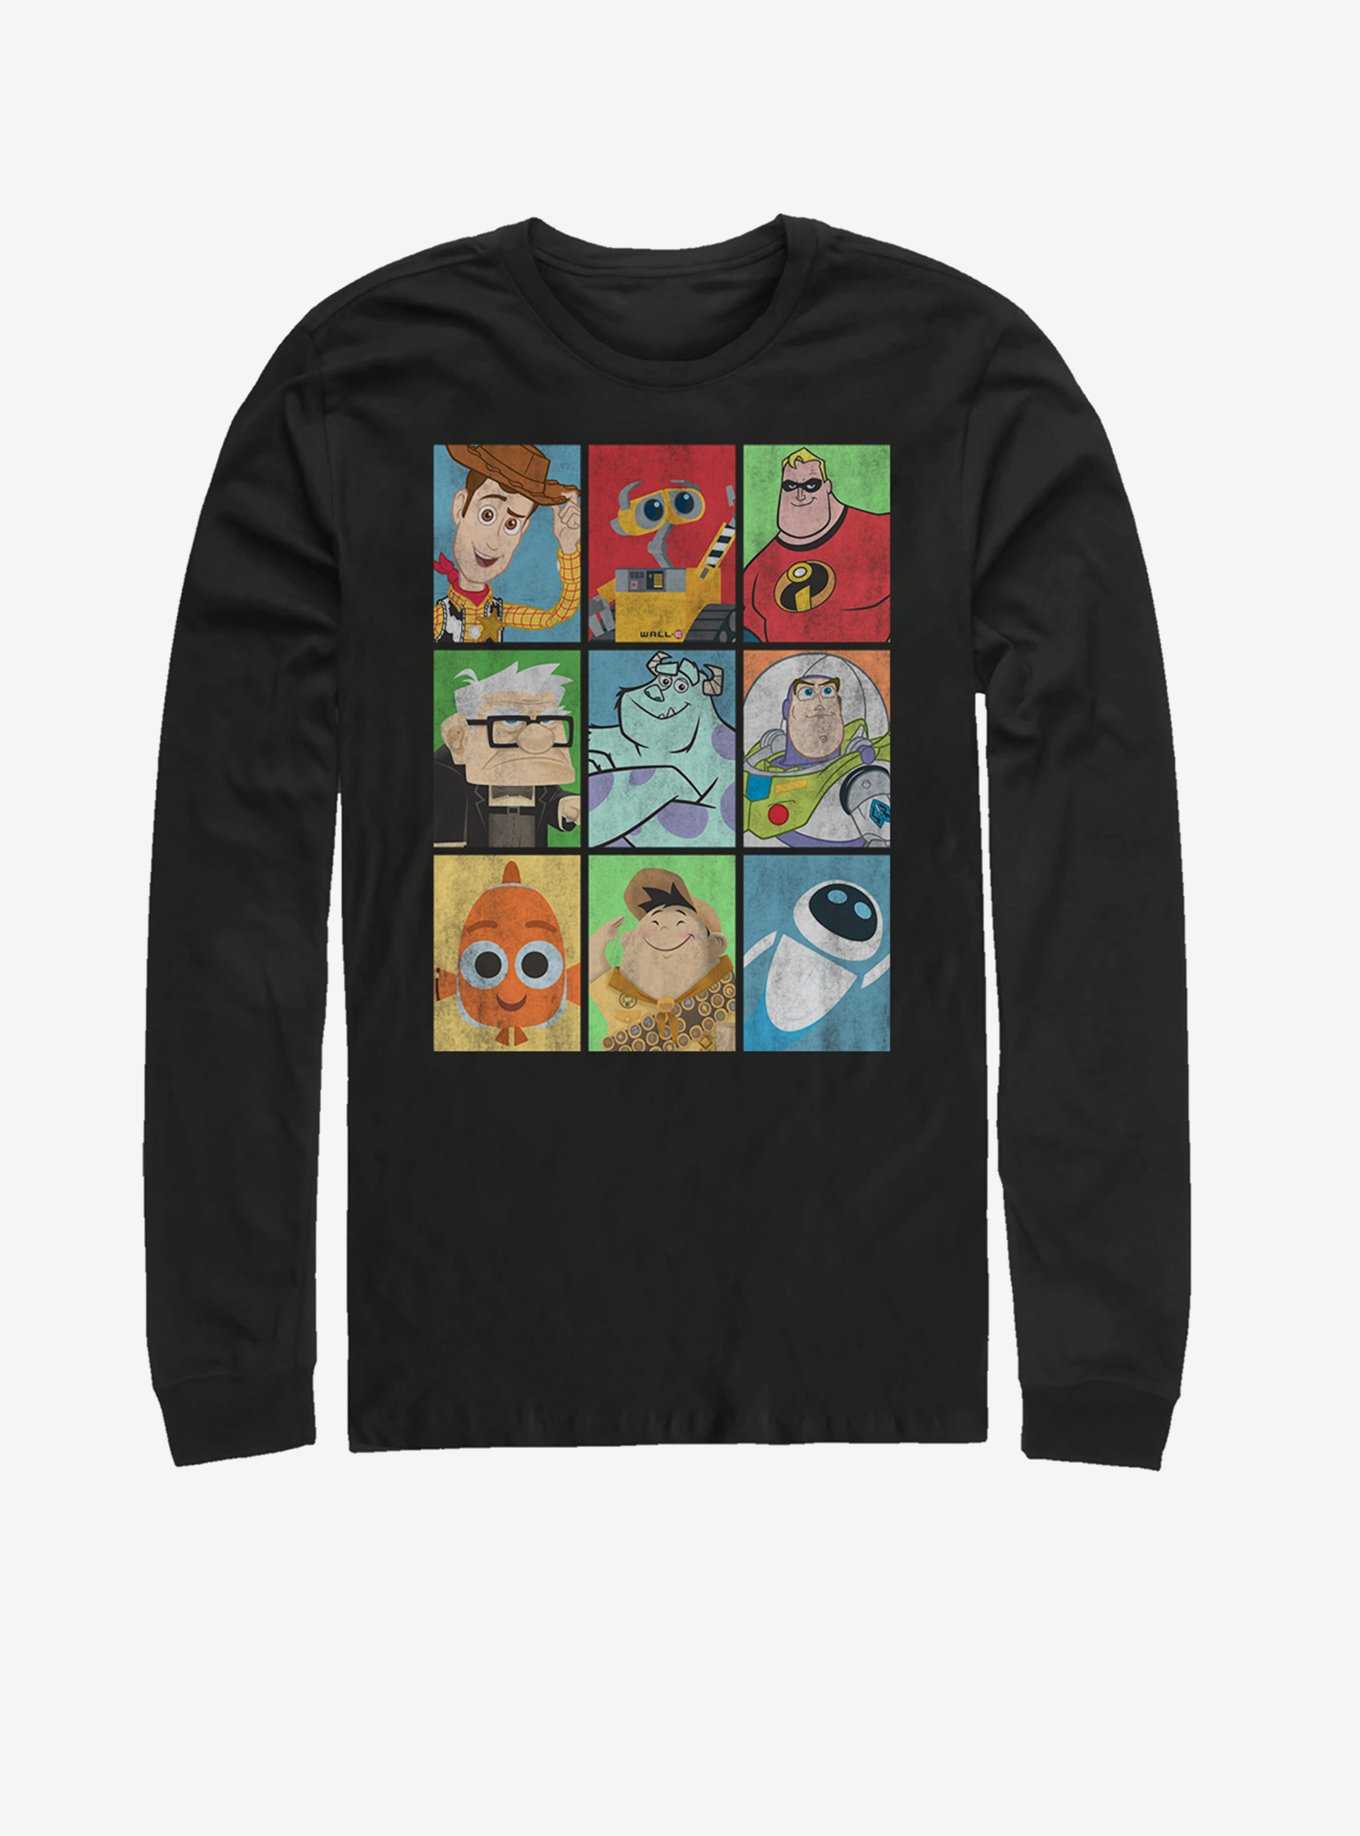 Disney Pixar Lineup Long-Sleeve T-Shirt, , hi-res